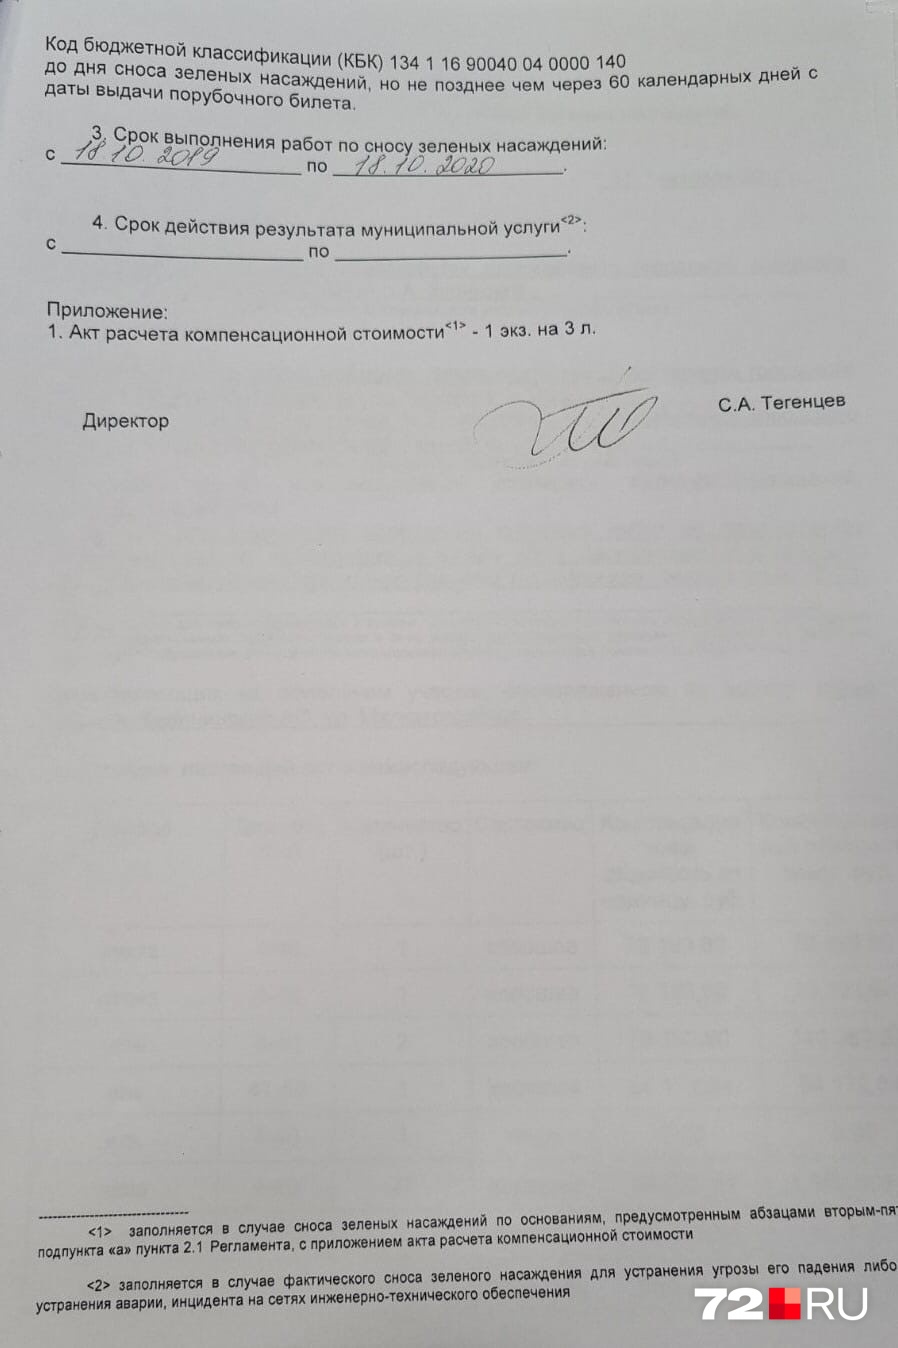 Согласованную версию документа подписал Семен Тегенцев, глава департамента городского хозяйства